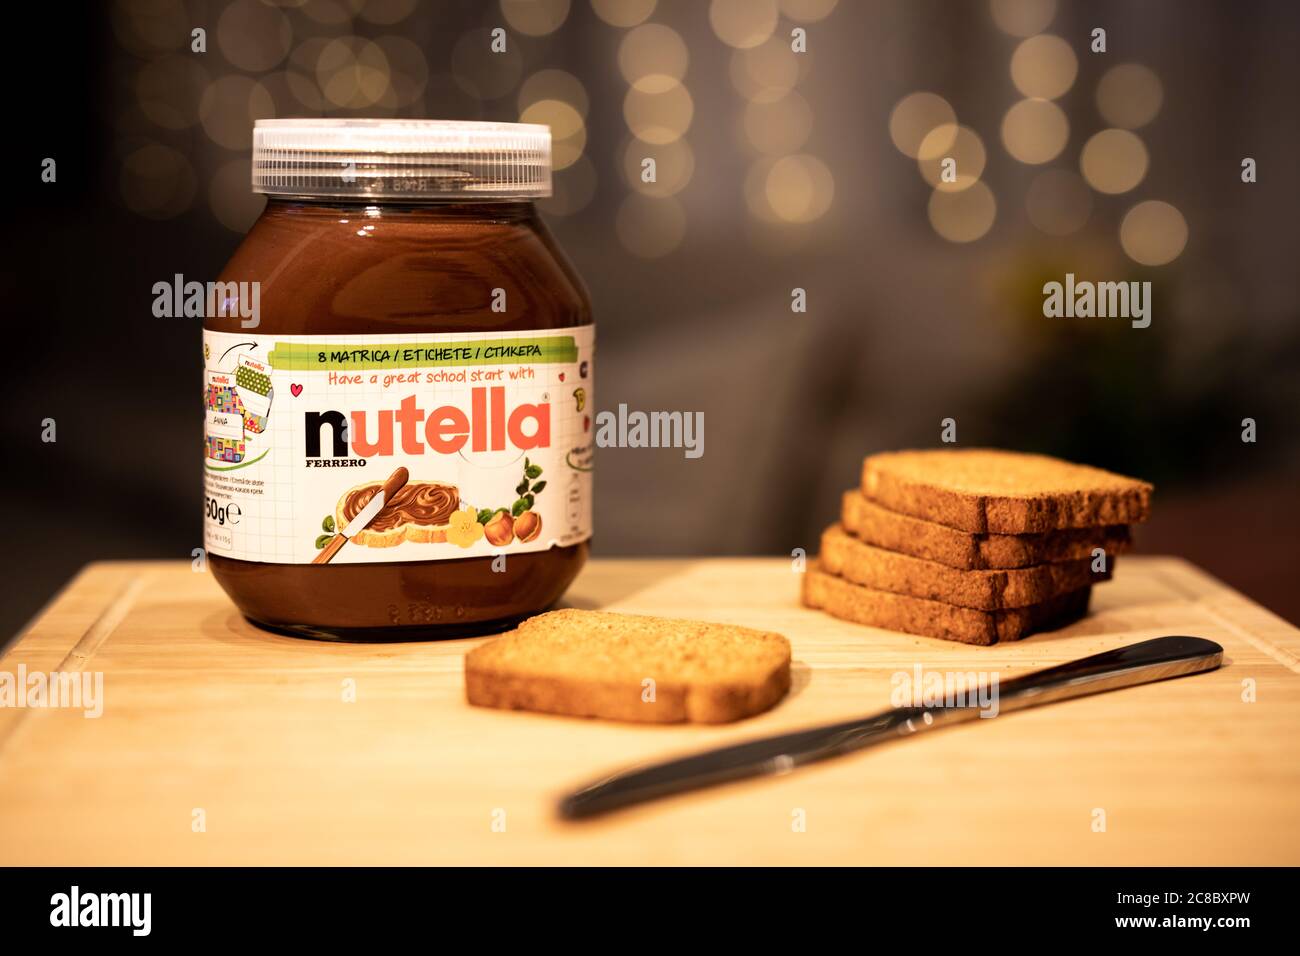 09.10.19 Budapest: Nutella Haselnuss-Brotdose. Nutella ist eine Marke von gesüßten Haselnuss-Kakao Aufstrich von der italienischen Firma Ferrero hergestellt. Stockfoto